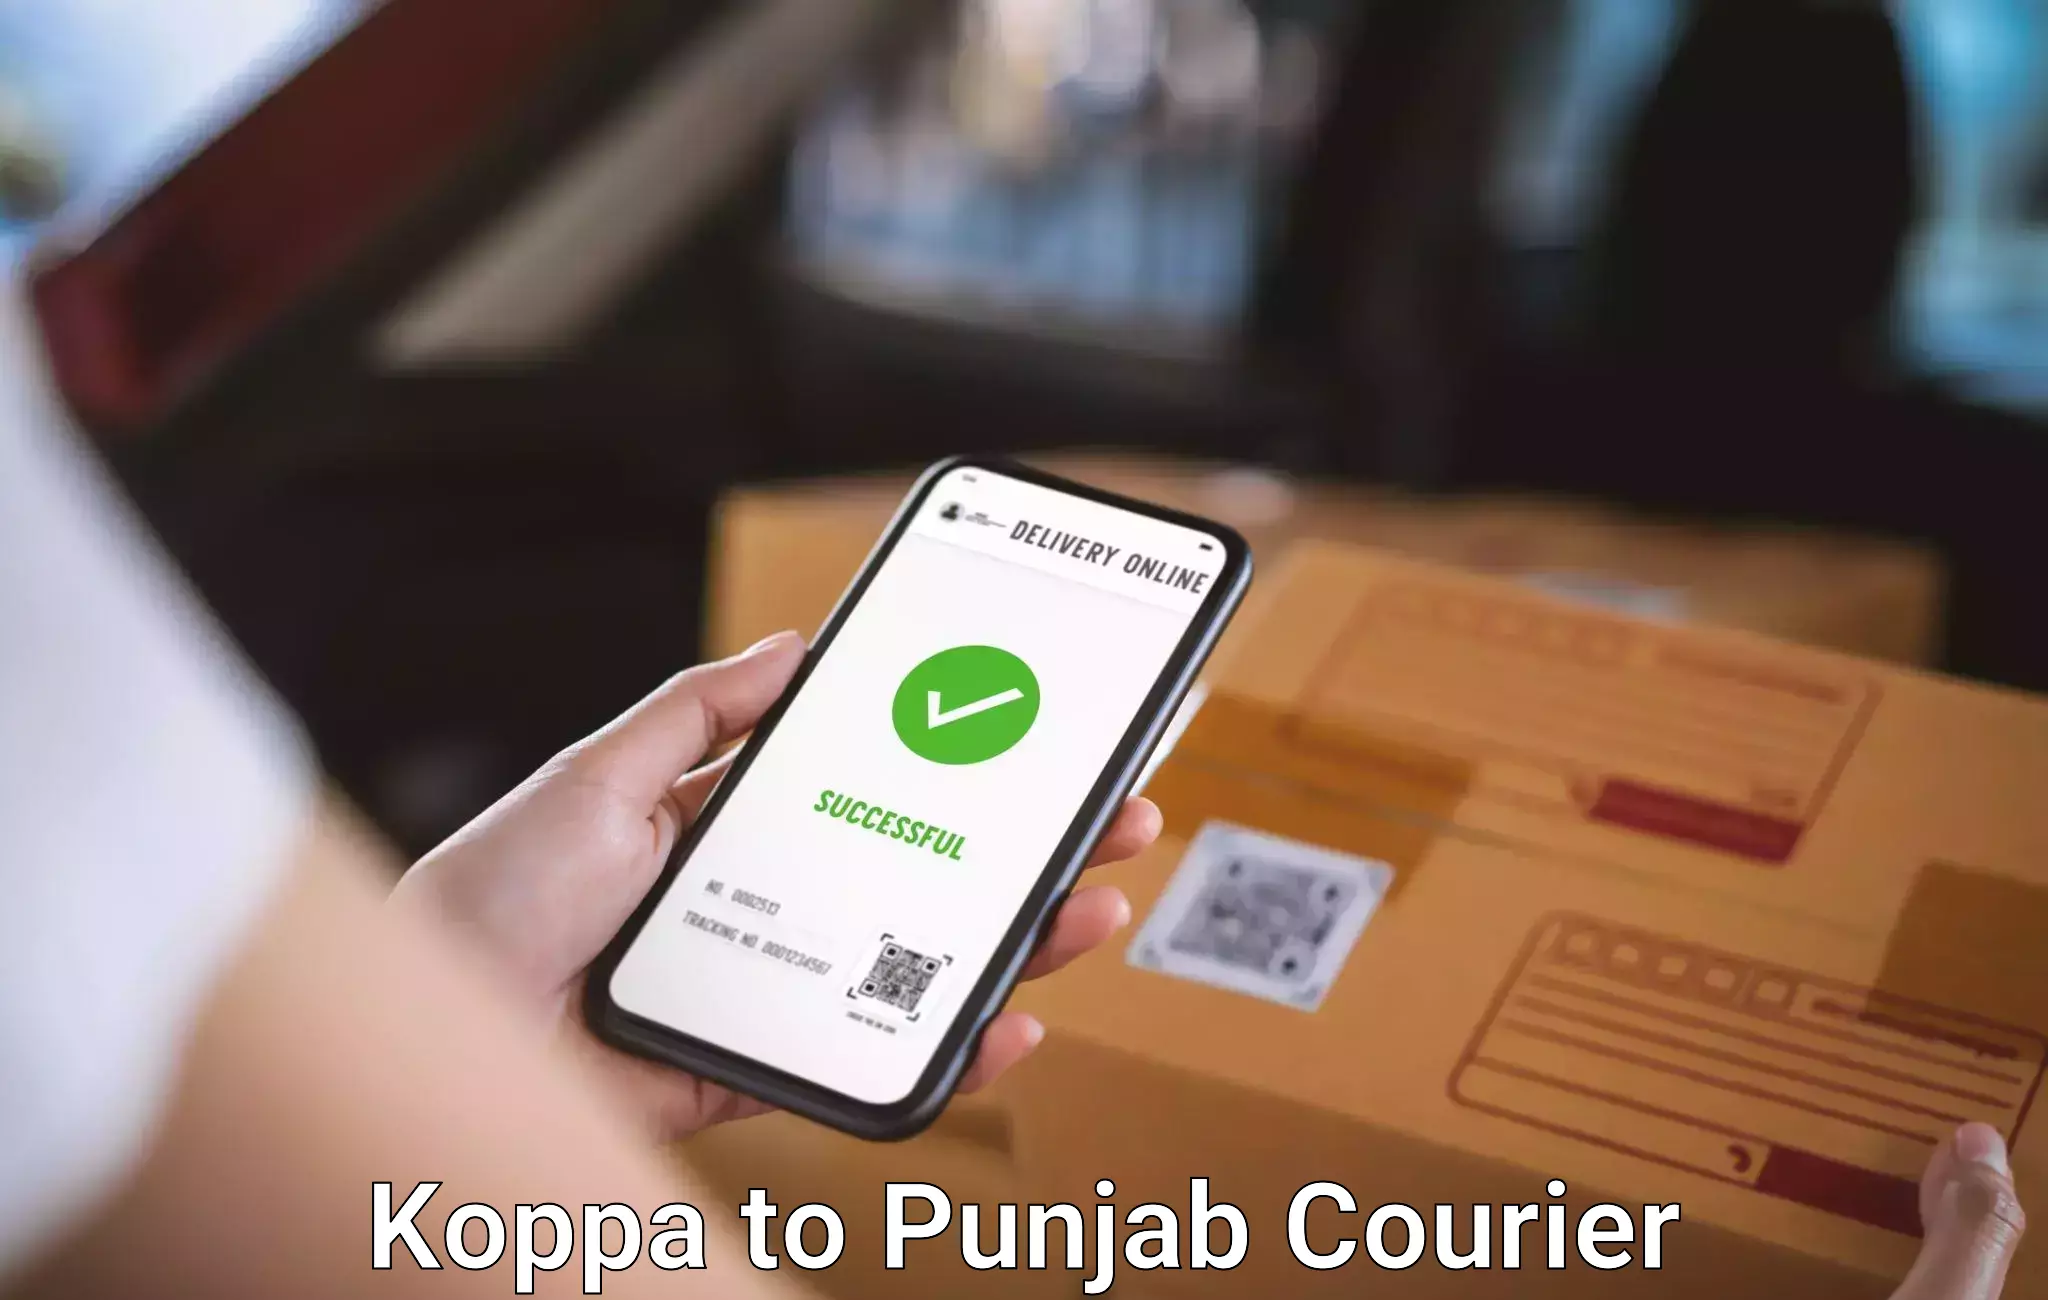 Baggage shipping service Koppa to Punjab